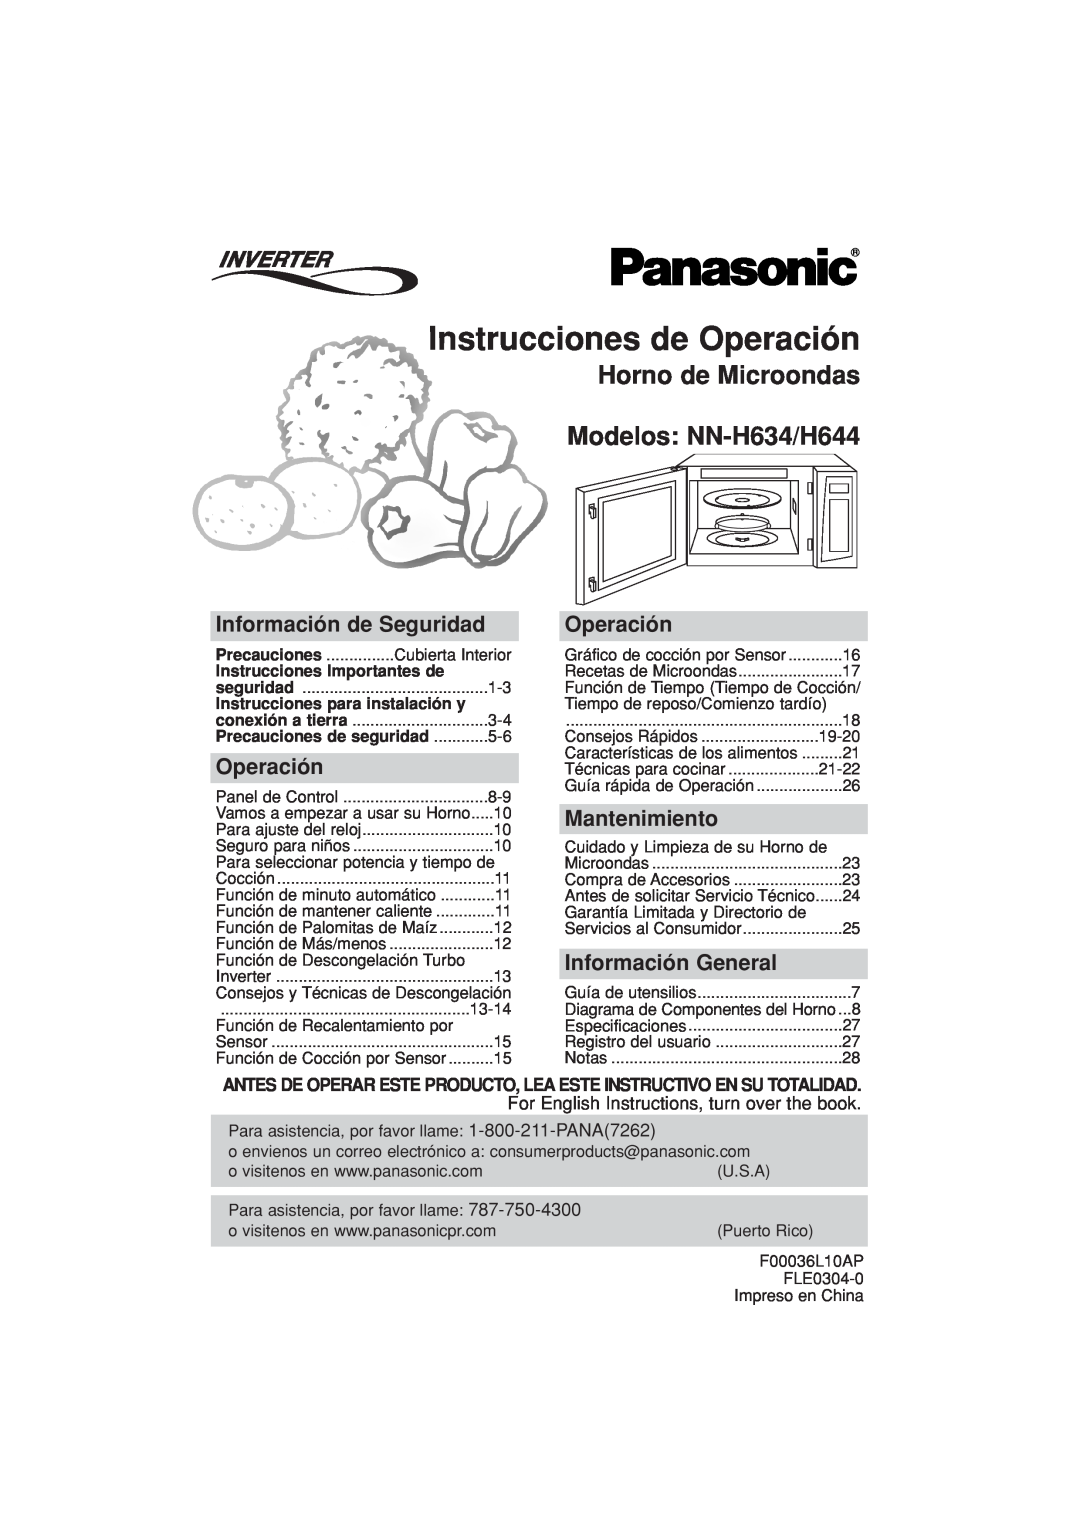 Panasonic Instrucciones de Operación, Horno de Microondas Modelos NN-H634/H644, Información de Seguridad, Mantenimiento 